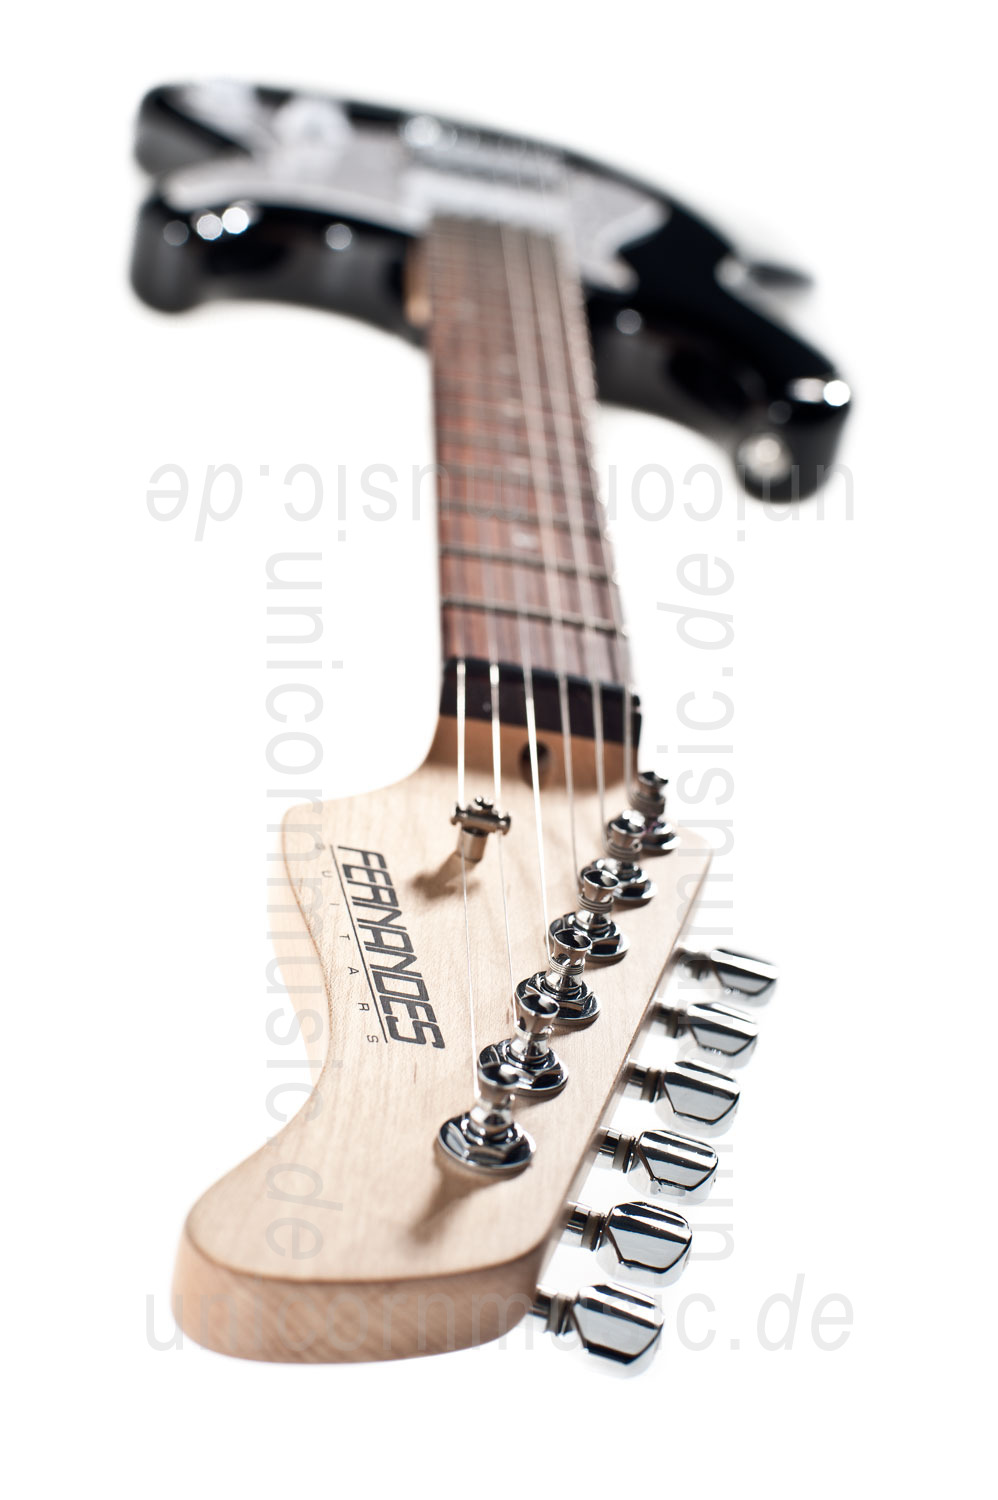 zur Artikelbeschreibung / Preis E-Gitarre FERNANDES RETROROCKET X - SSH Version - Black